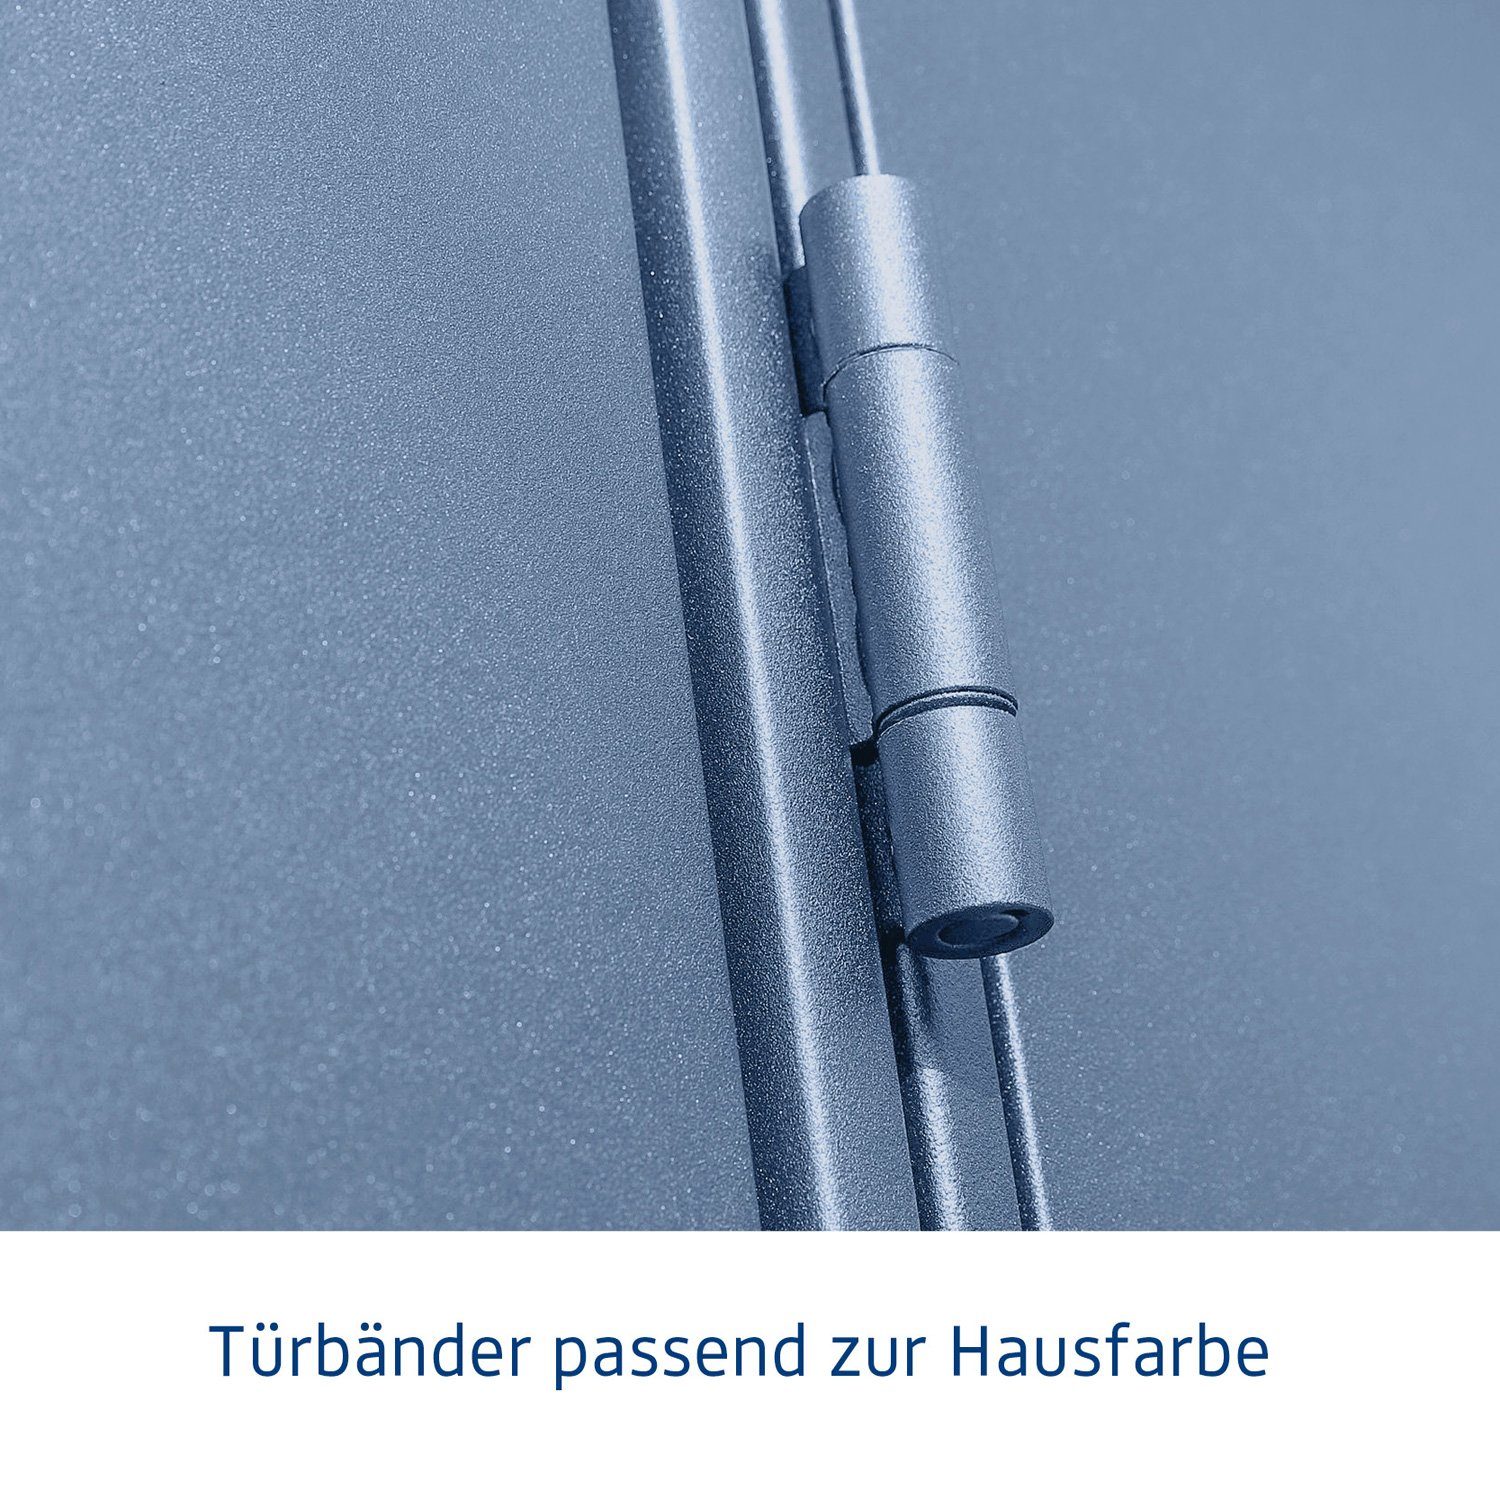 taubenblau Ecostar Pultdach Tür Typ Hörmann mit Gerätehaus 3, Metall-Gerätehaus Elegant 2-flügelige